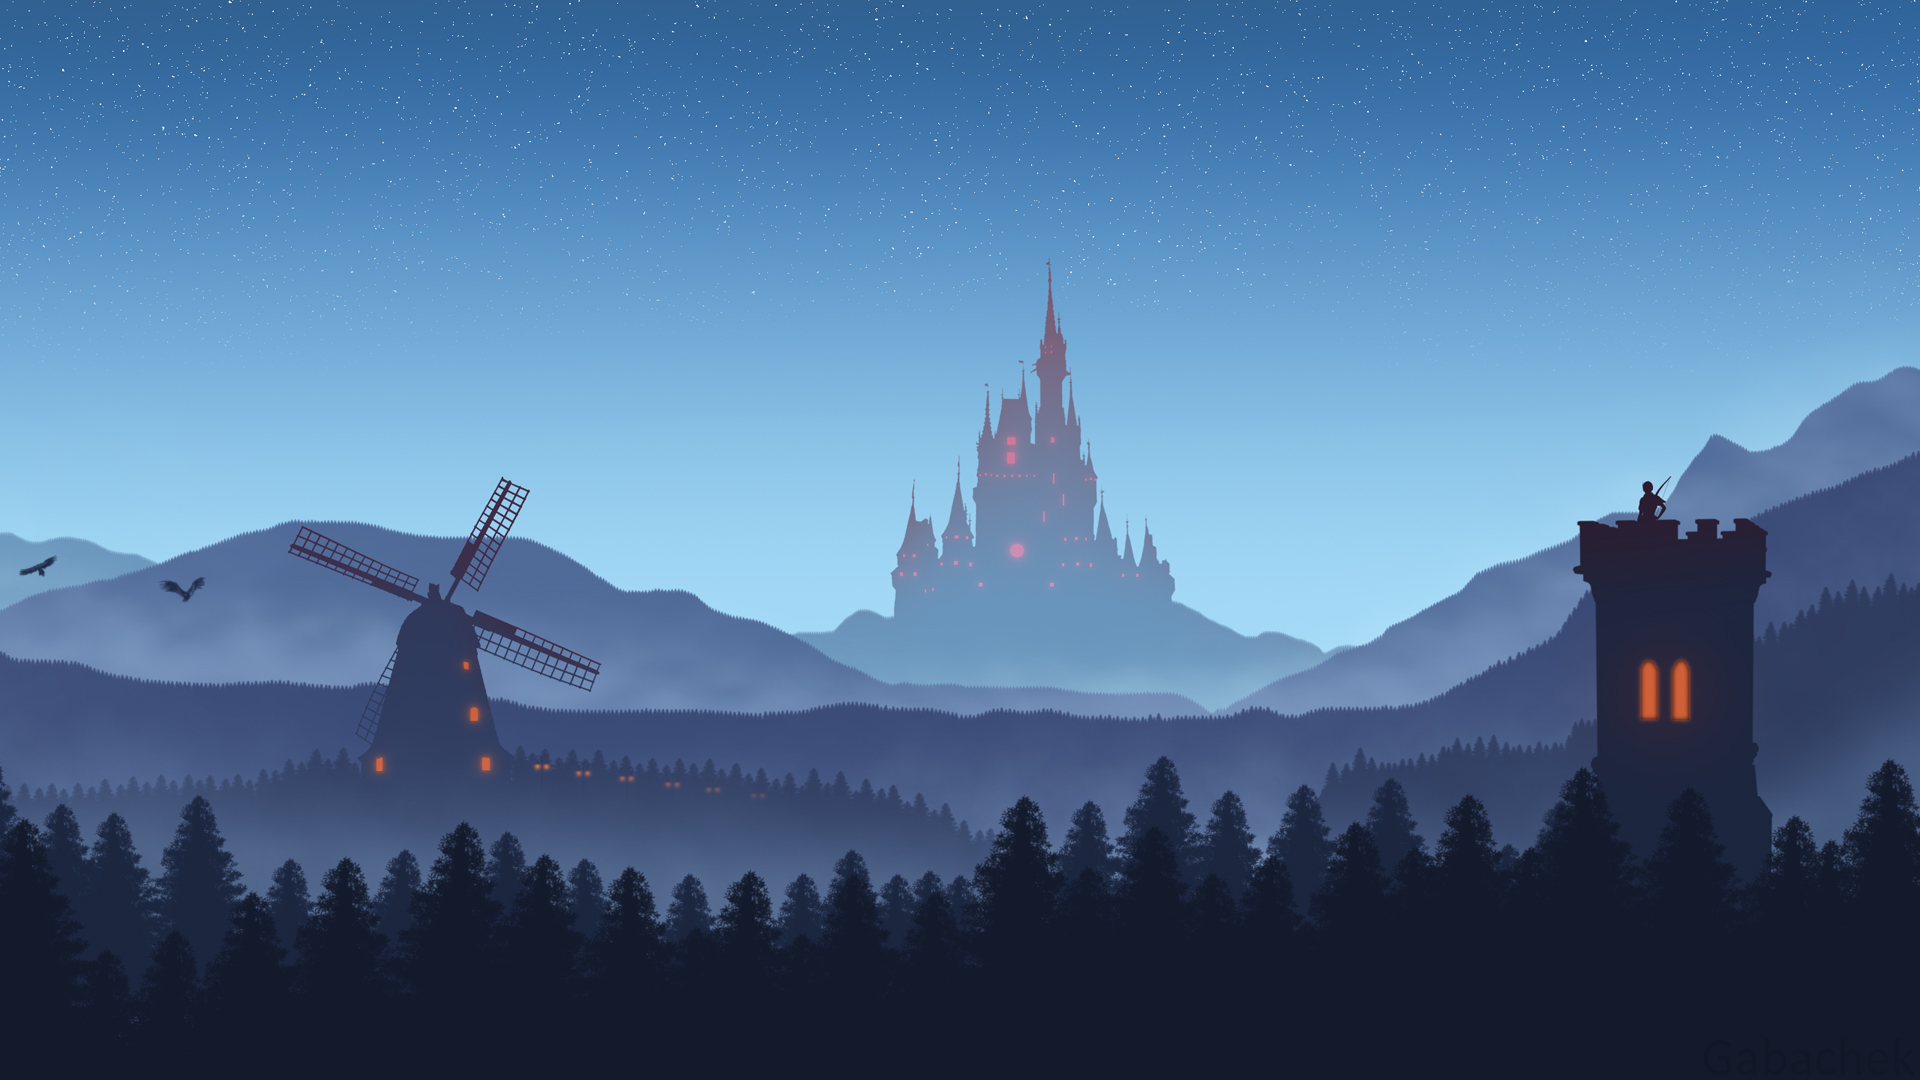 夜晚 星星 山 城堡 风车 手绘 风景 桌面 壁纸